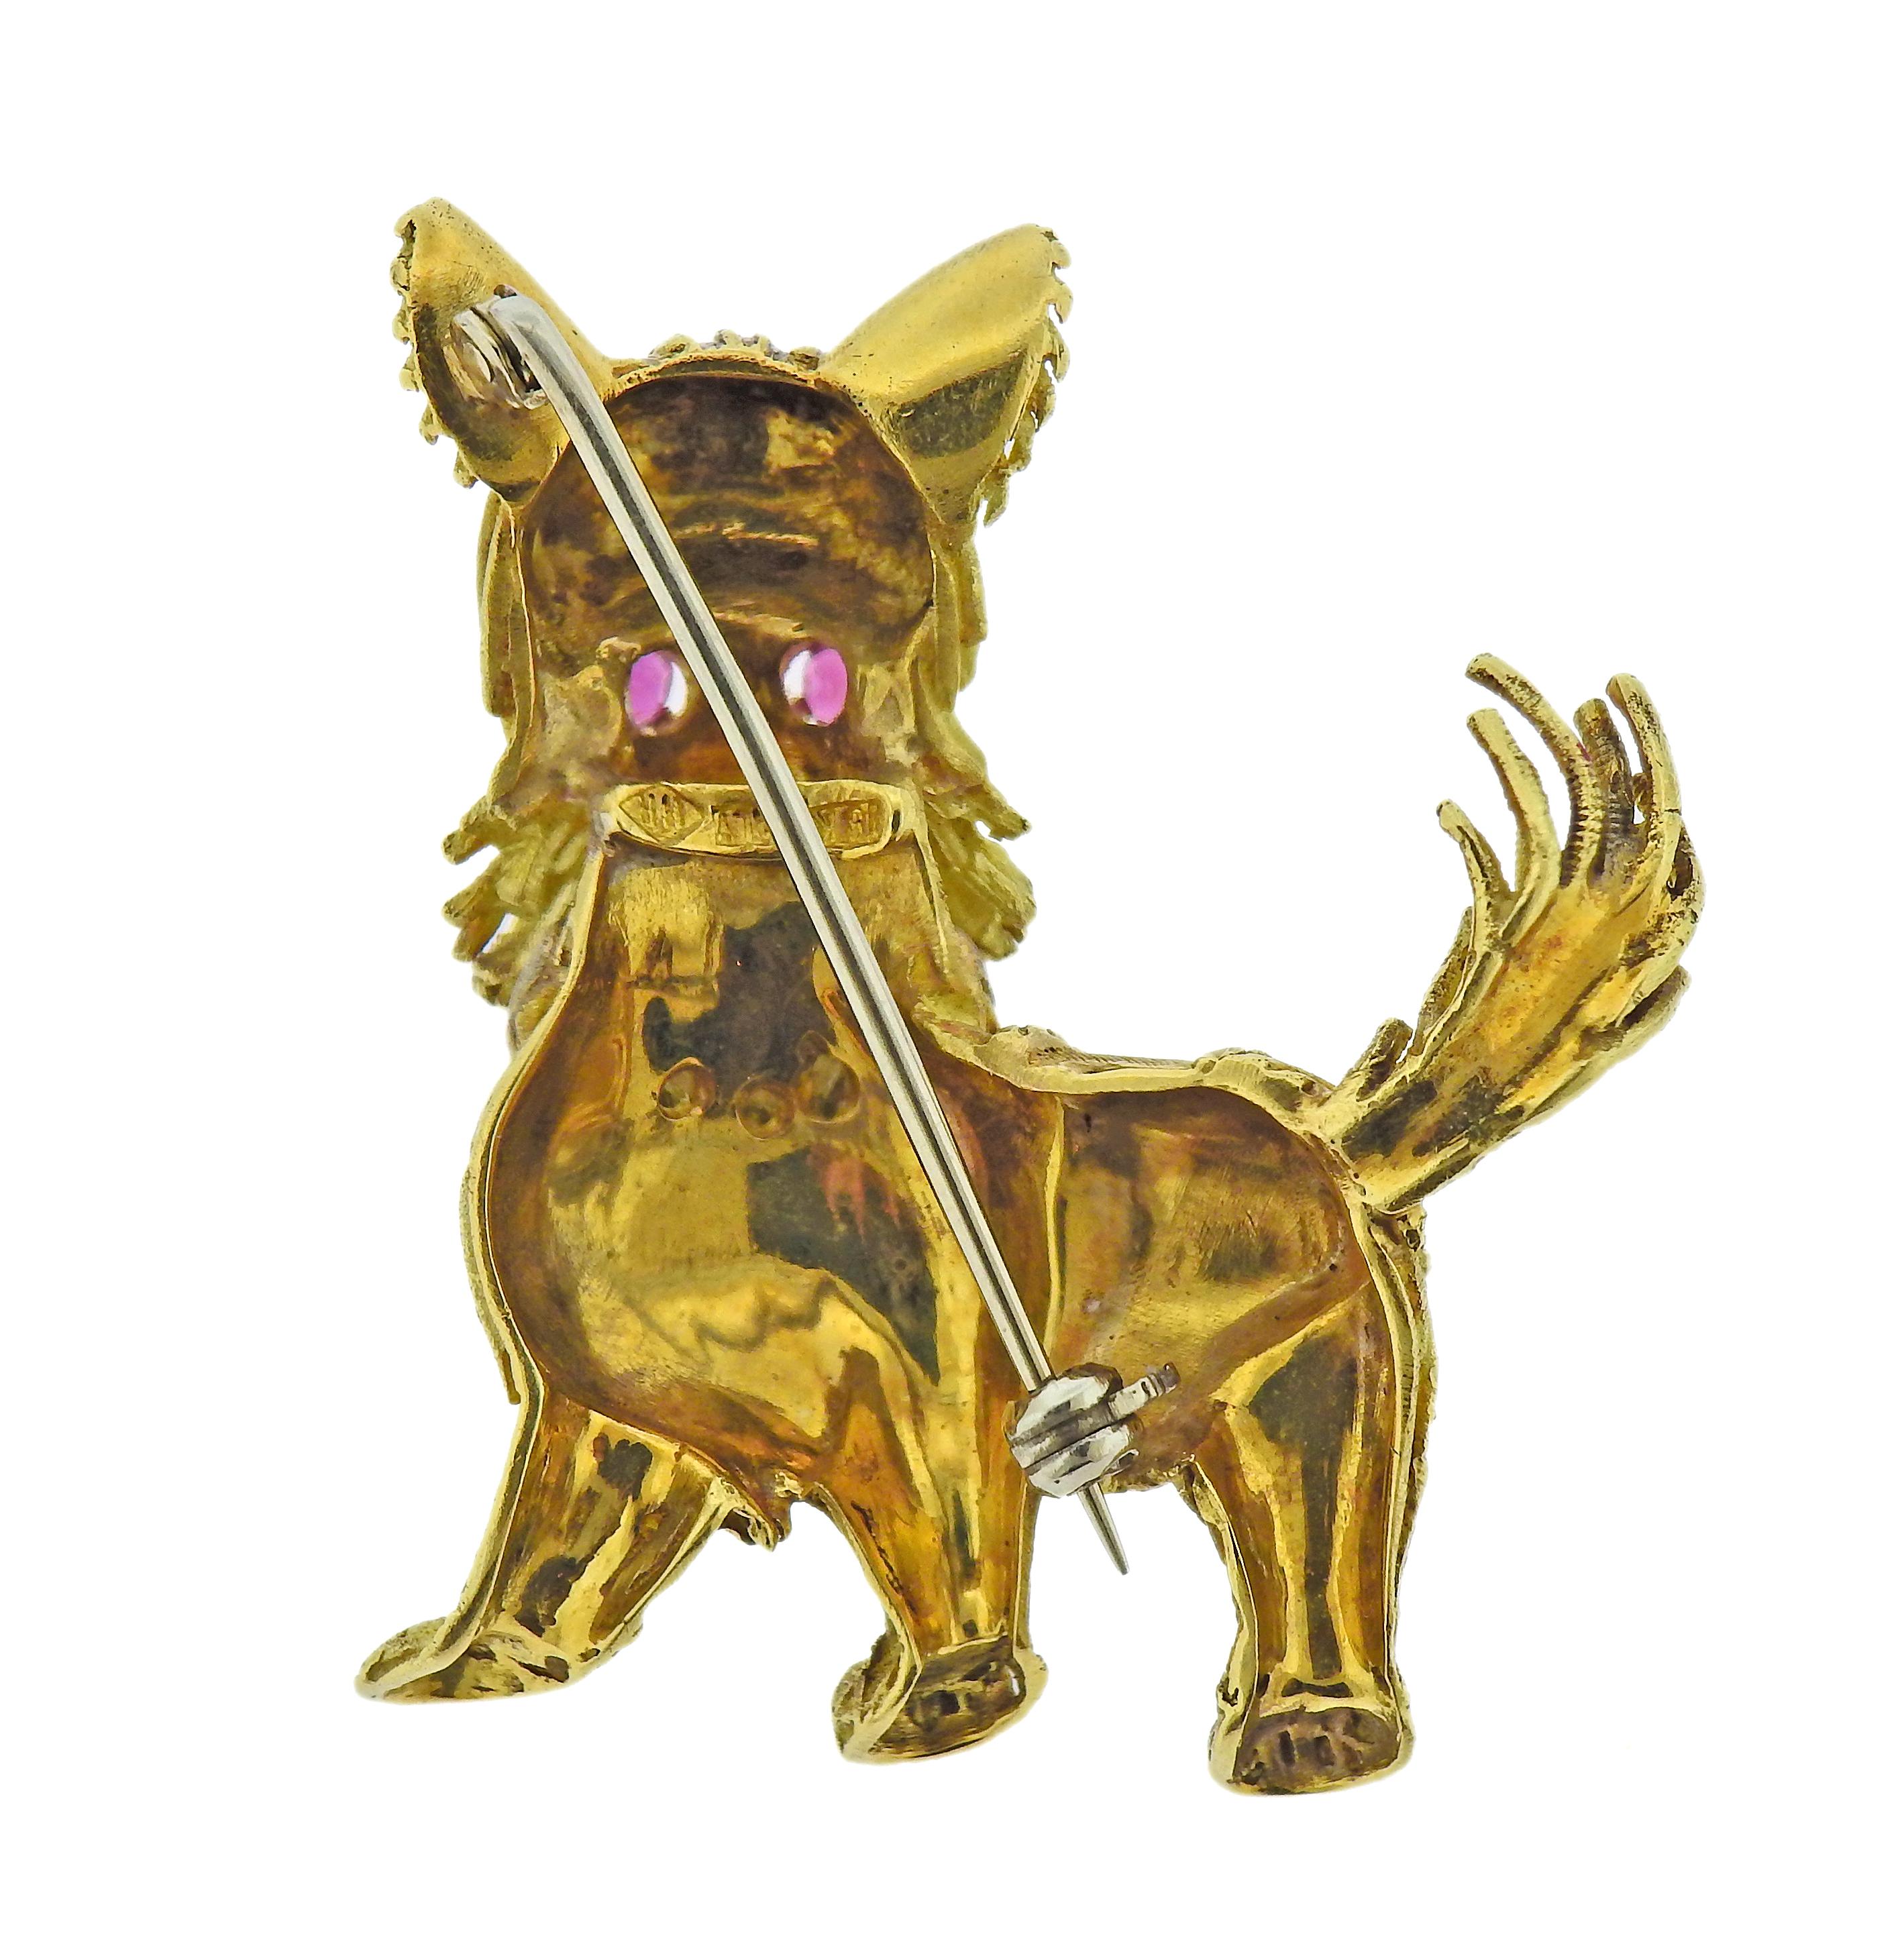 1960er Jahre 18k Gold Hundebrosche mit Rubinaugen. Die Brosche misst 35 mm x 39 mm. Gezeichnet: 18k Italien. Gewicht - 15,3 Gramm. 